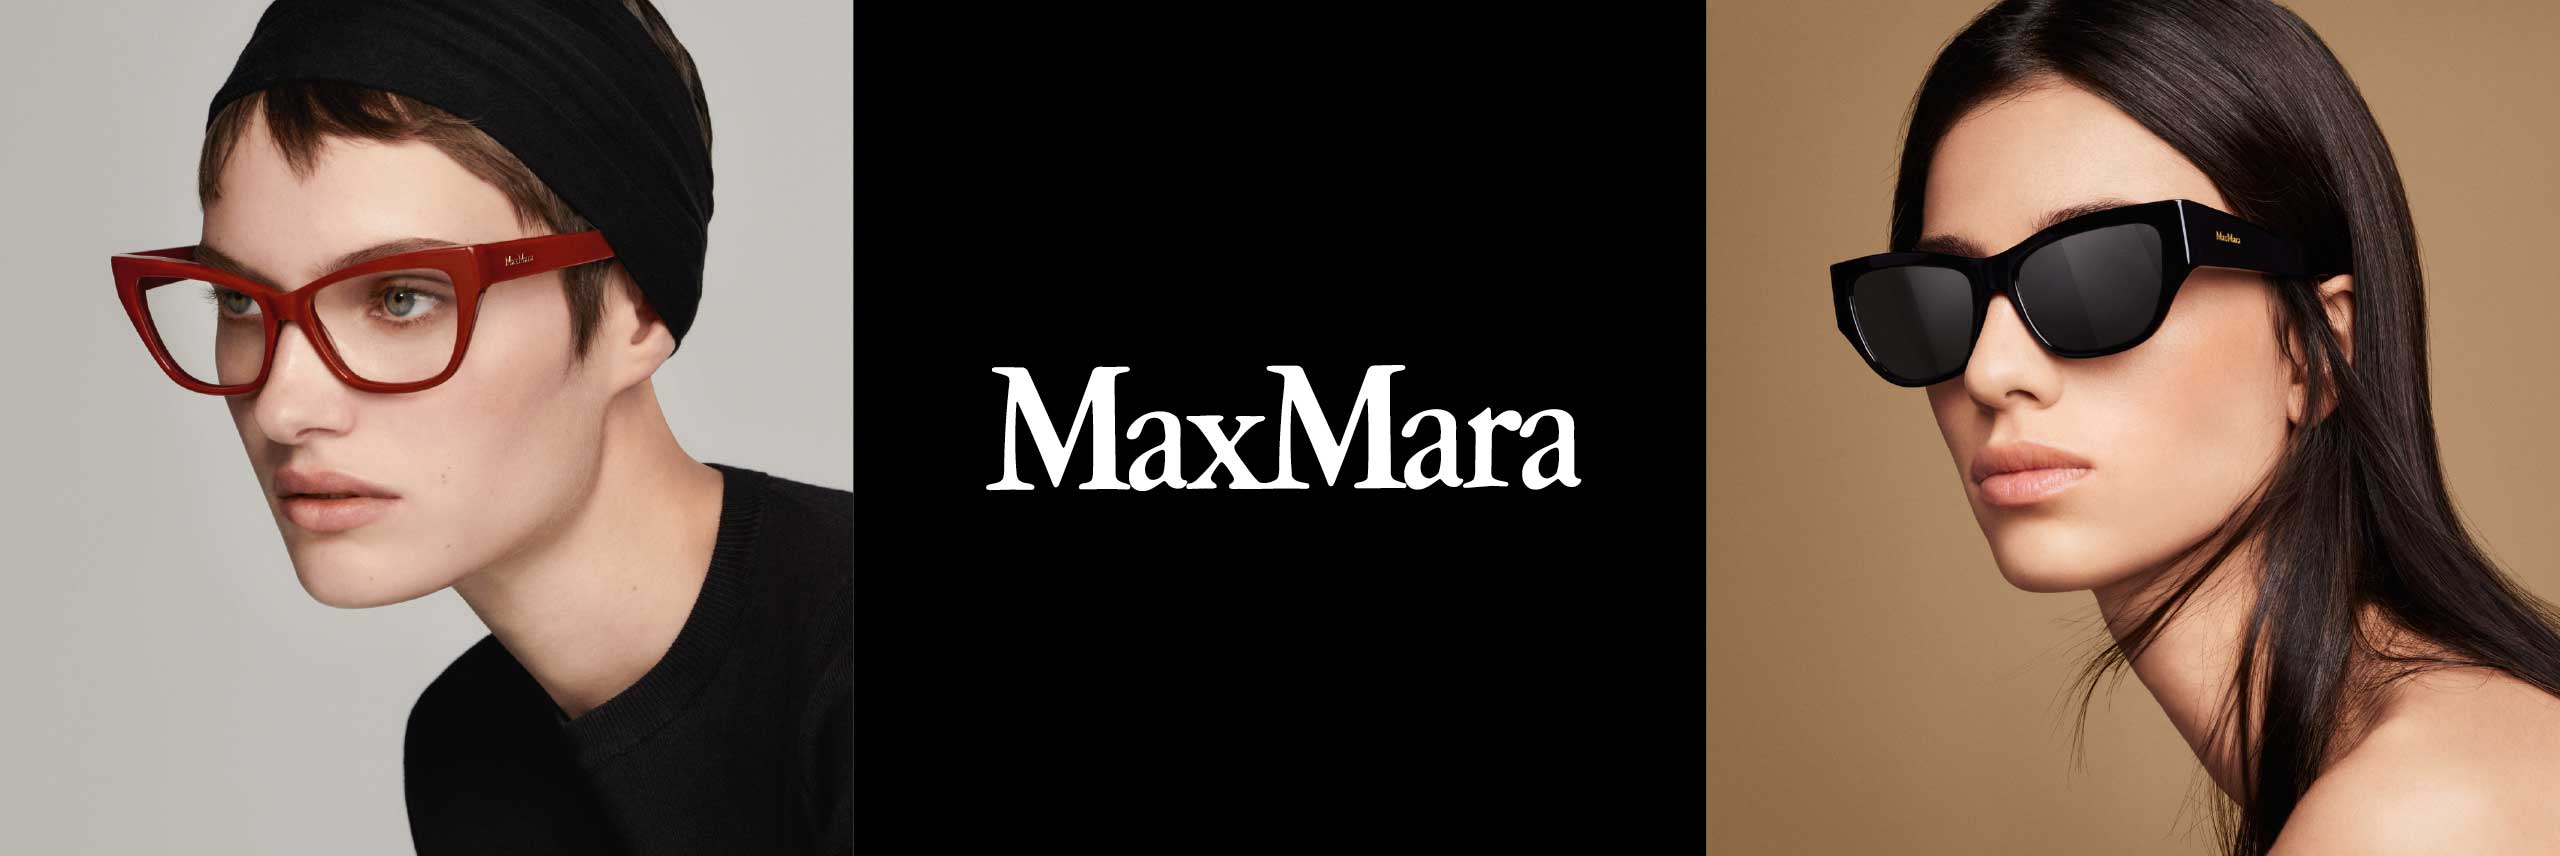 Max Mara Glasses | Max Mara Prescription Glasses – Fashion Eyewear US